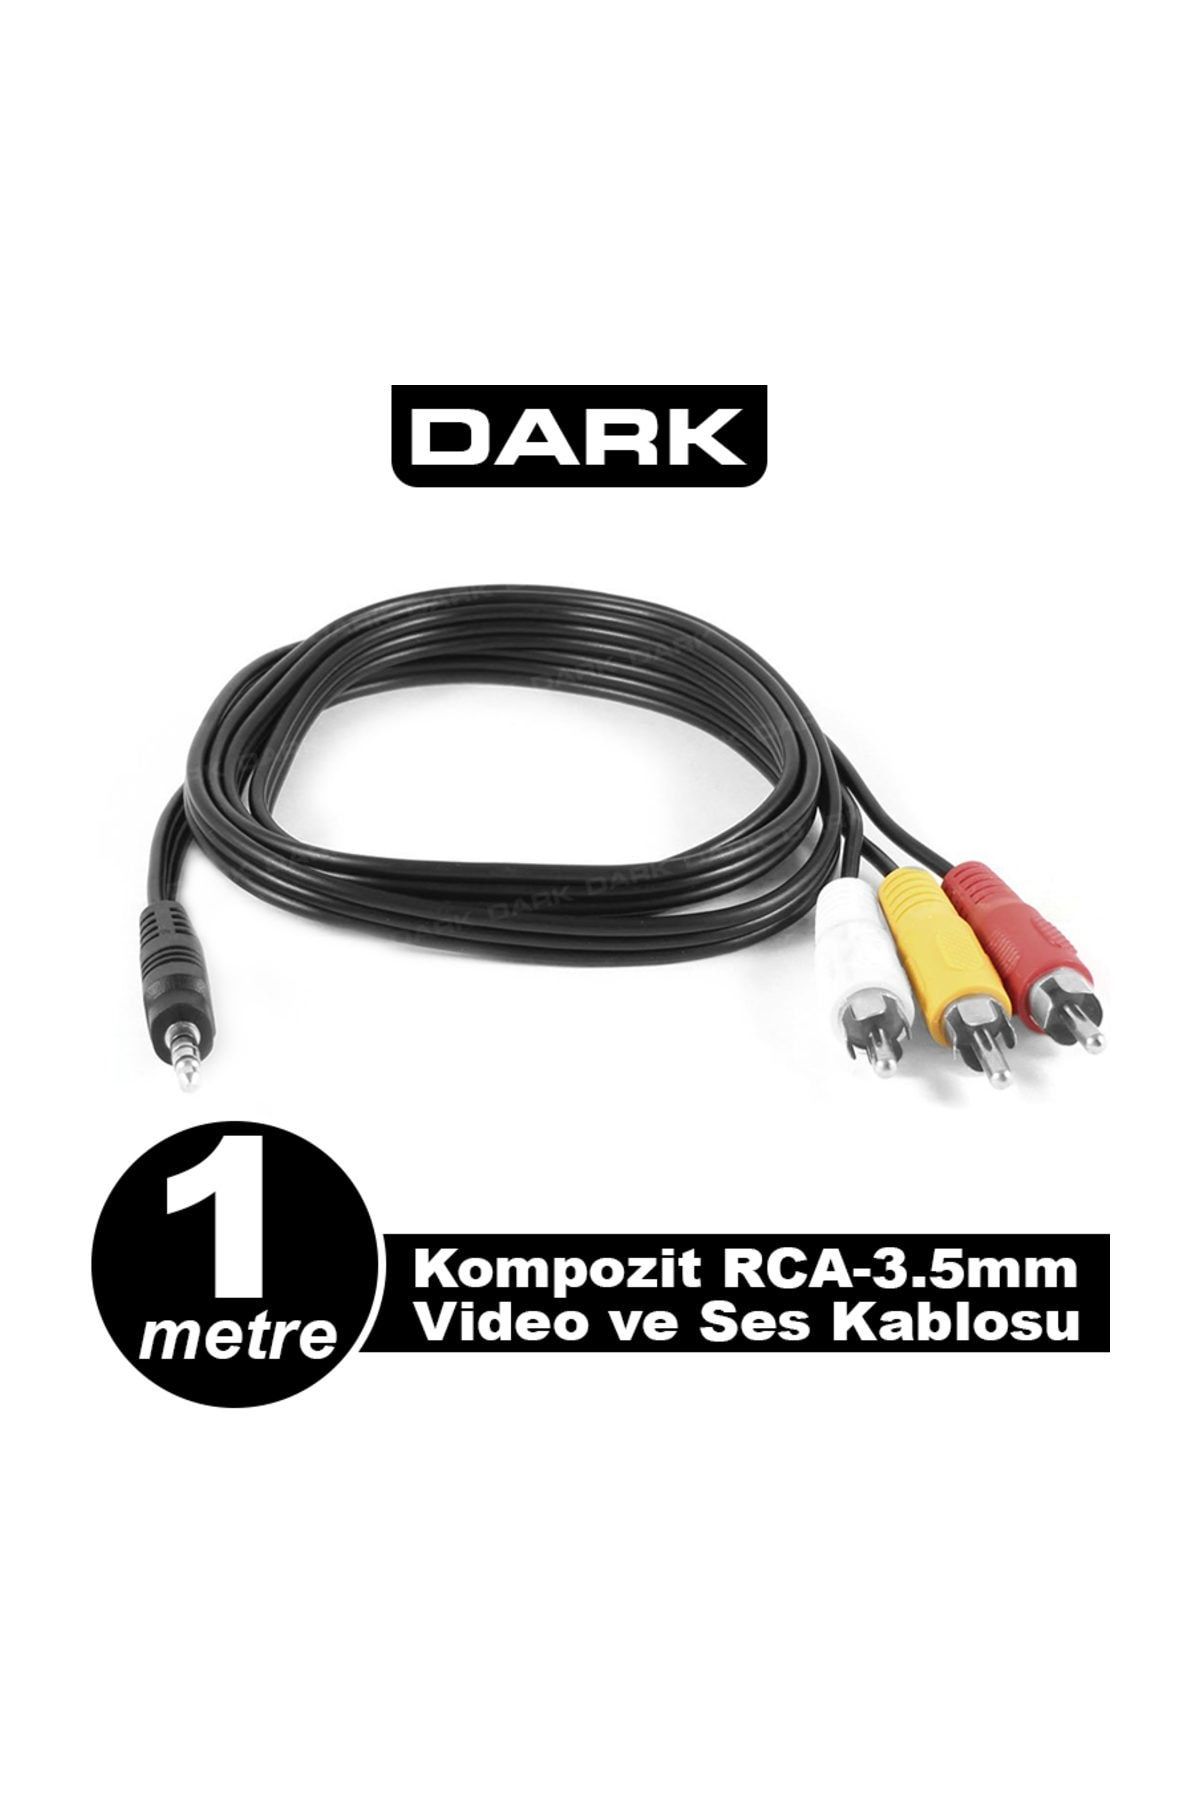 Dark Analog Video ve Ses Aktarımı için 3.5mm - Kompozit RCA Dönüştürücü Kablo (DK-CB-VCOMX35)